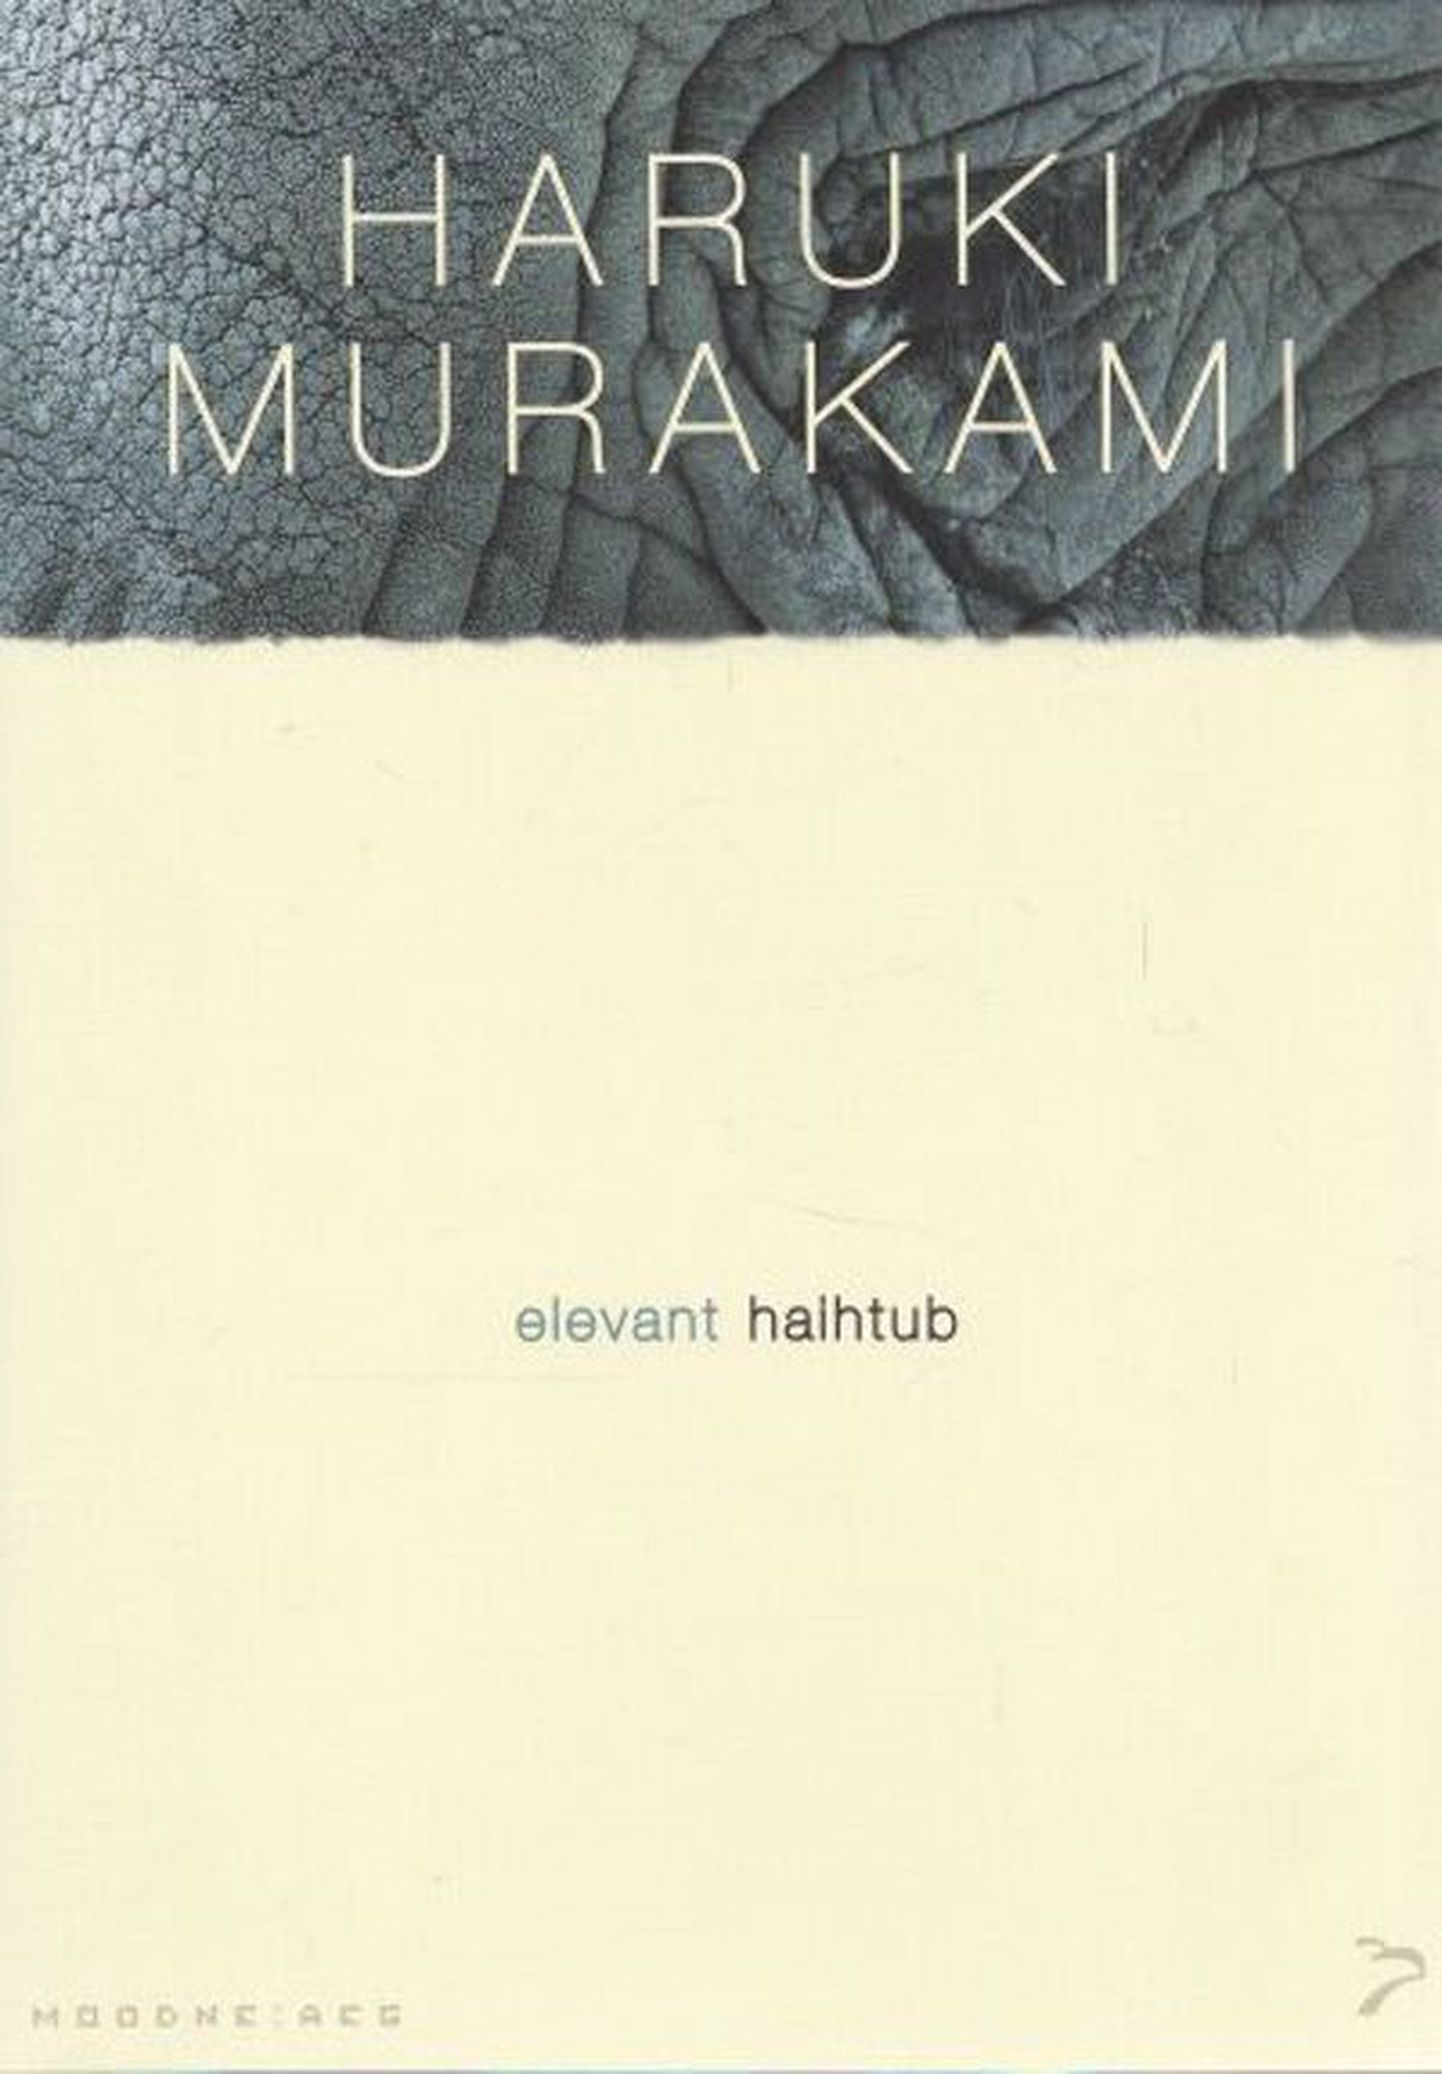 Raamat

Haruki Murakami
«Elevant haihtub»
Tõlkinud Margis Talijärv
307 lk
Sari «Moodne aeg»
Varrak